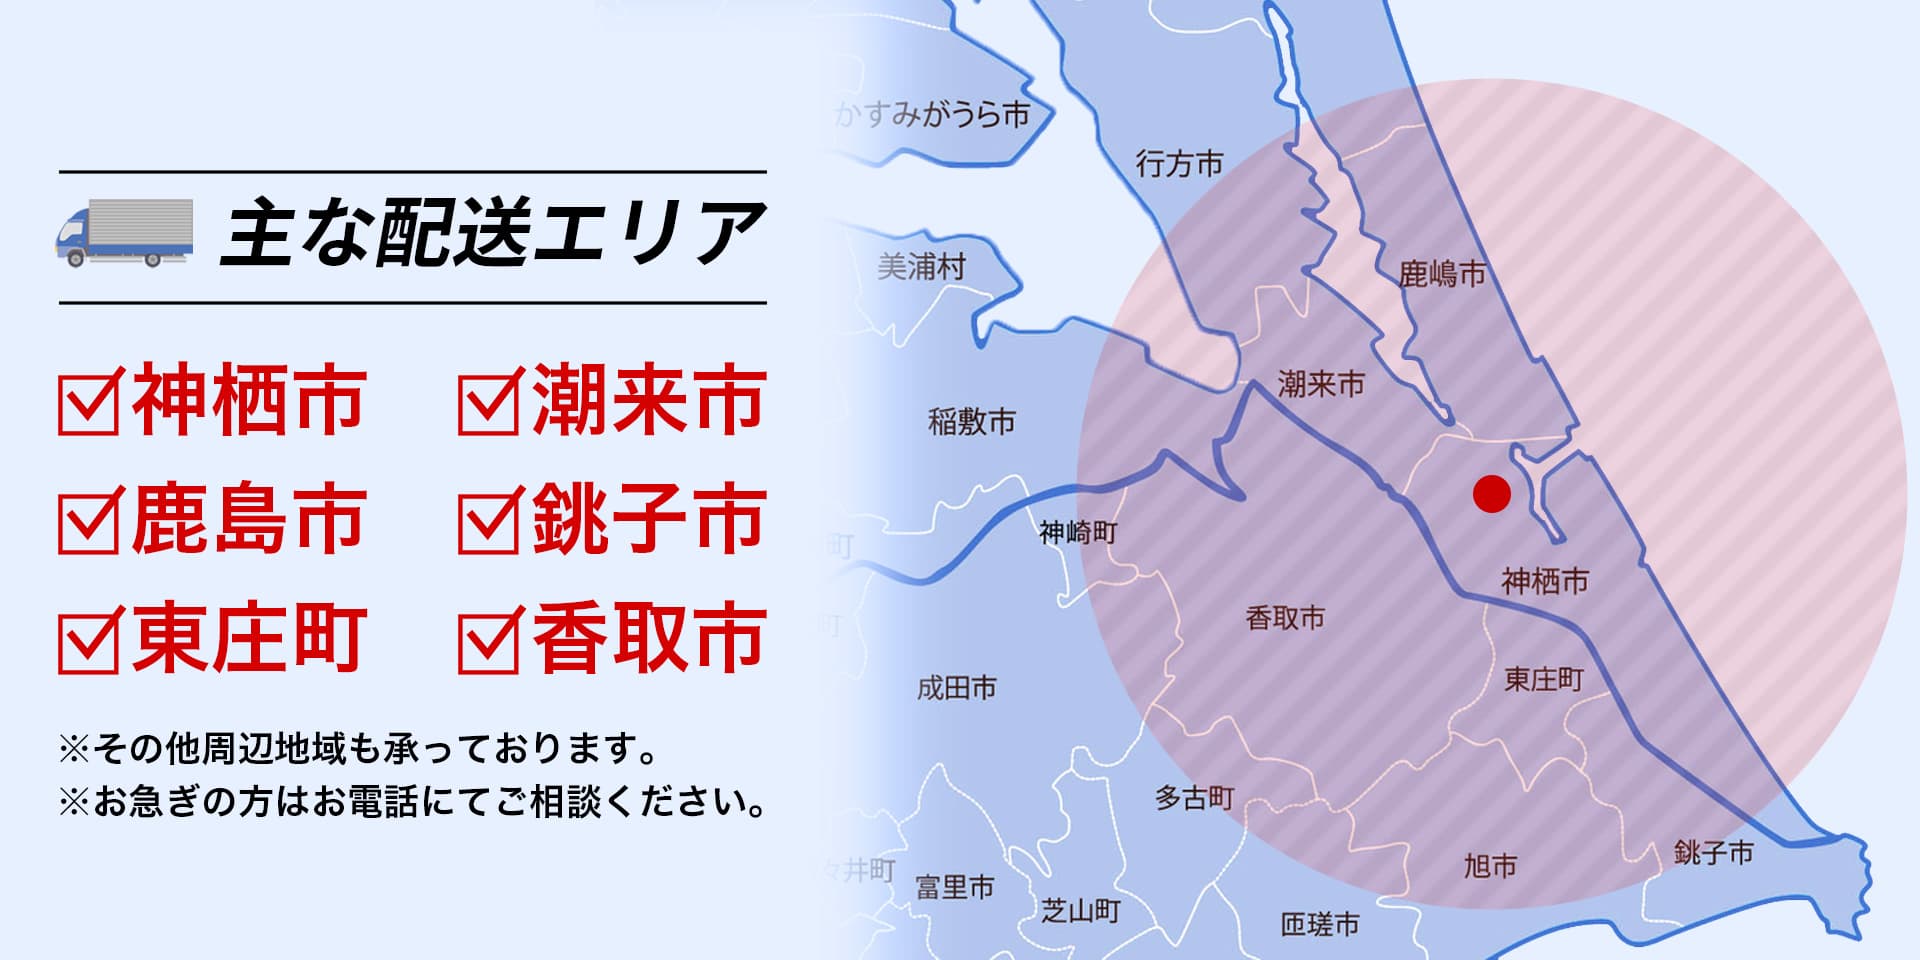 会津商会の主な配送エリアは神栖市、潮来市、鹿島市、銚子市、東庄町、香取市